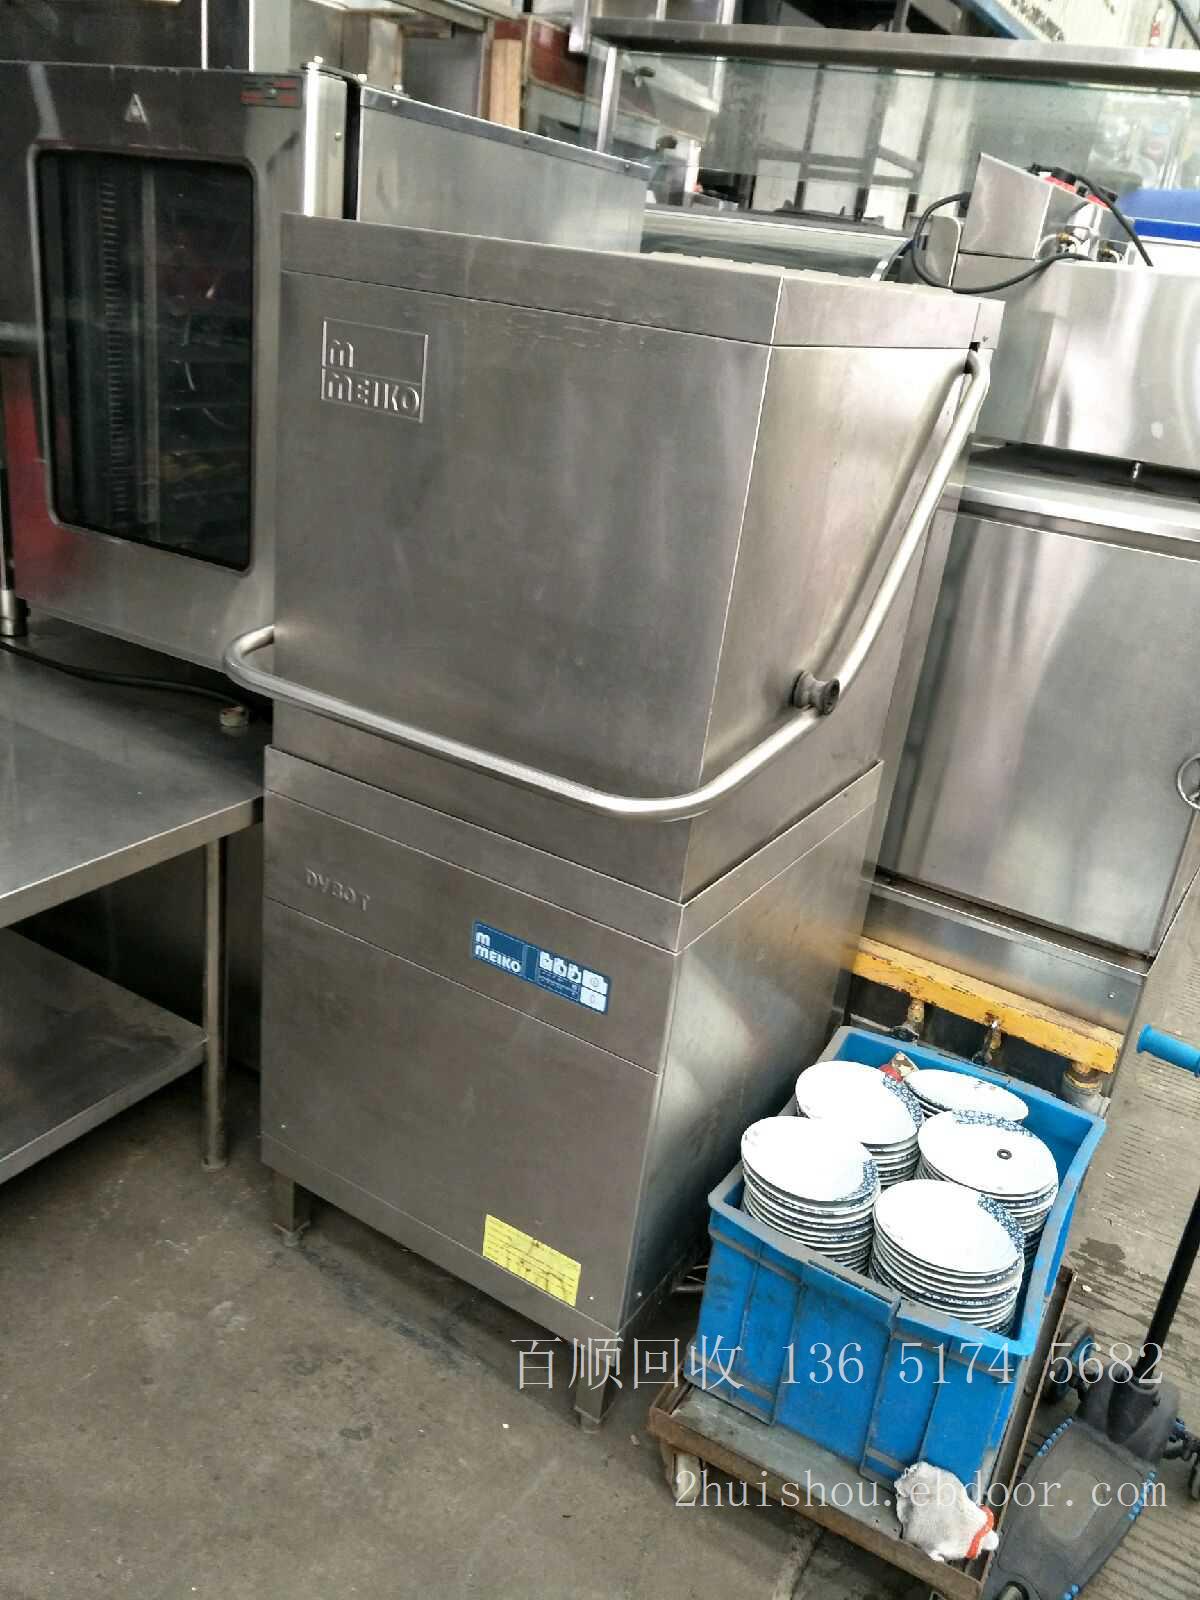 上海二手厨房设备回收-高价回收上海二手厨房设备-上海二手厨房设备回收